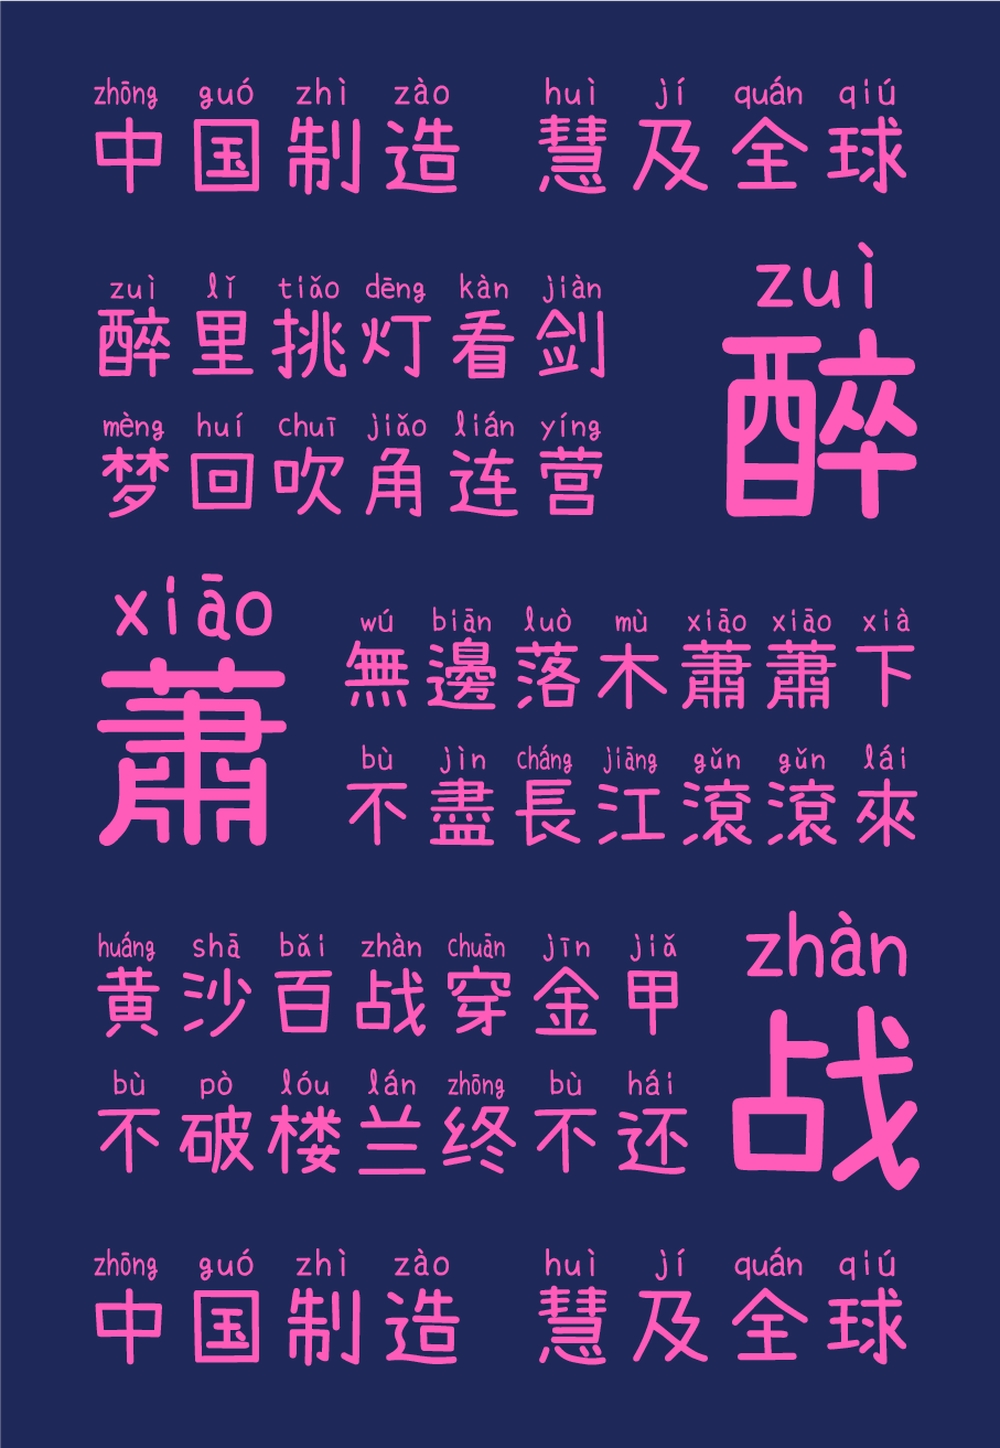 萌神手写体｜用于学习和普及中文的拼音手写字体